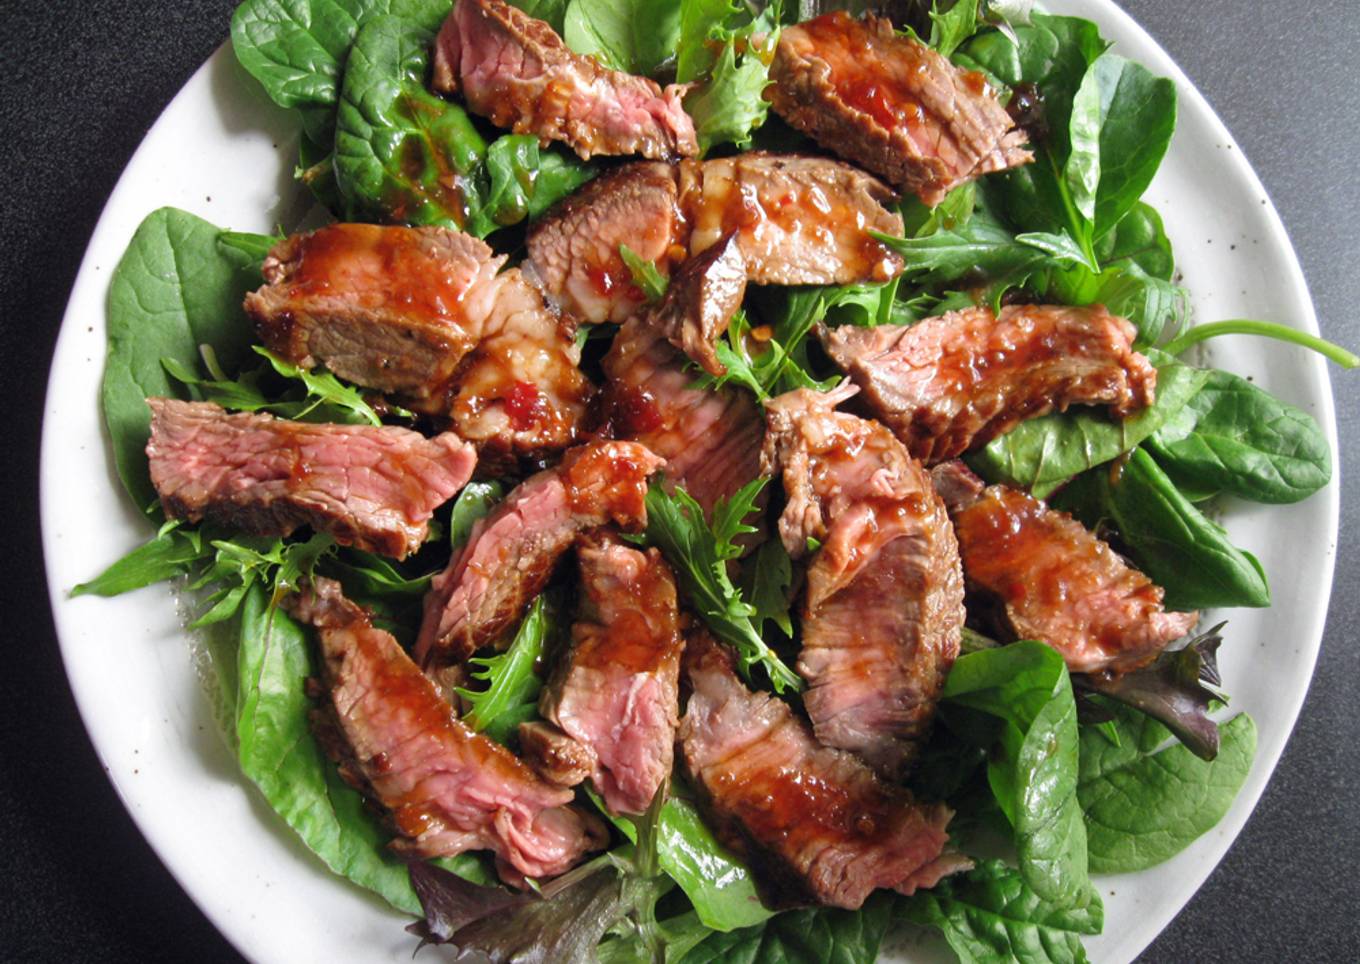 Steak Salad with Ponzu Based Dressing